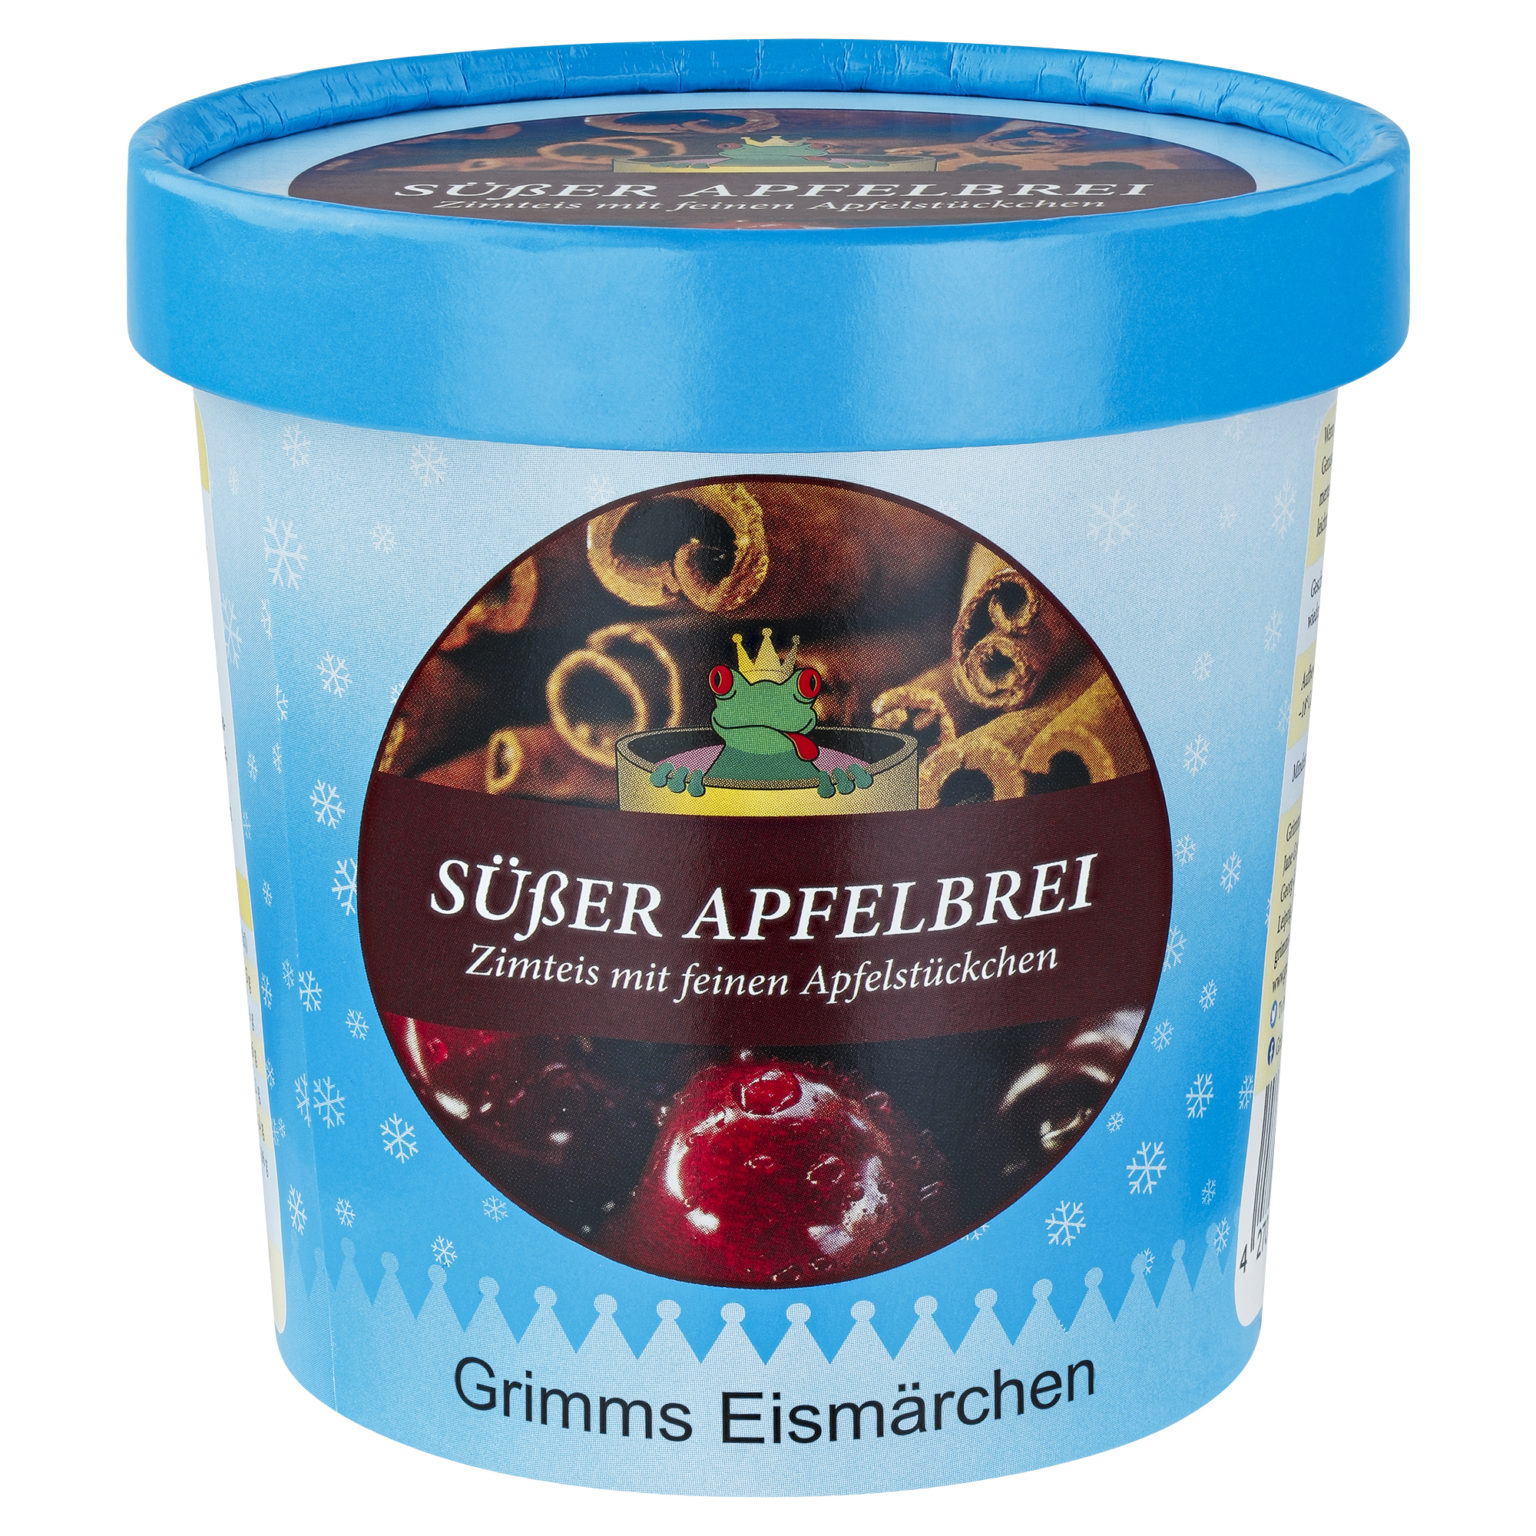 Süßer Apfelbrei - Grimms Eismärchen